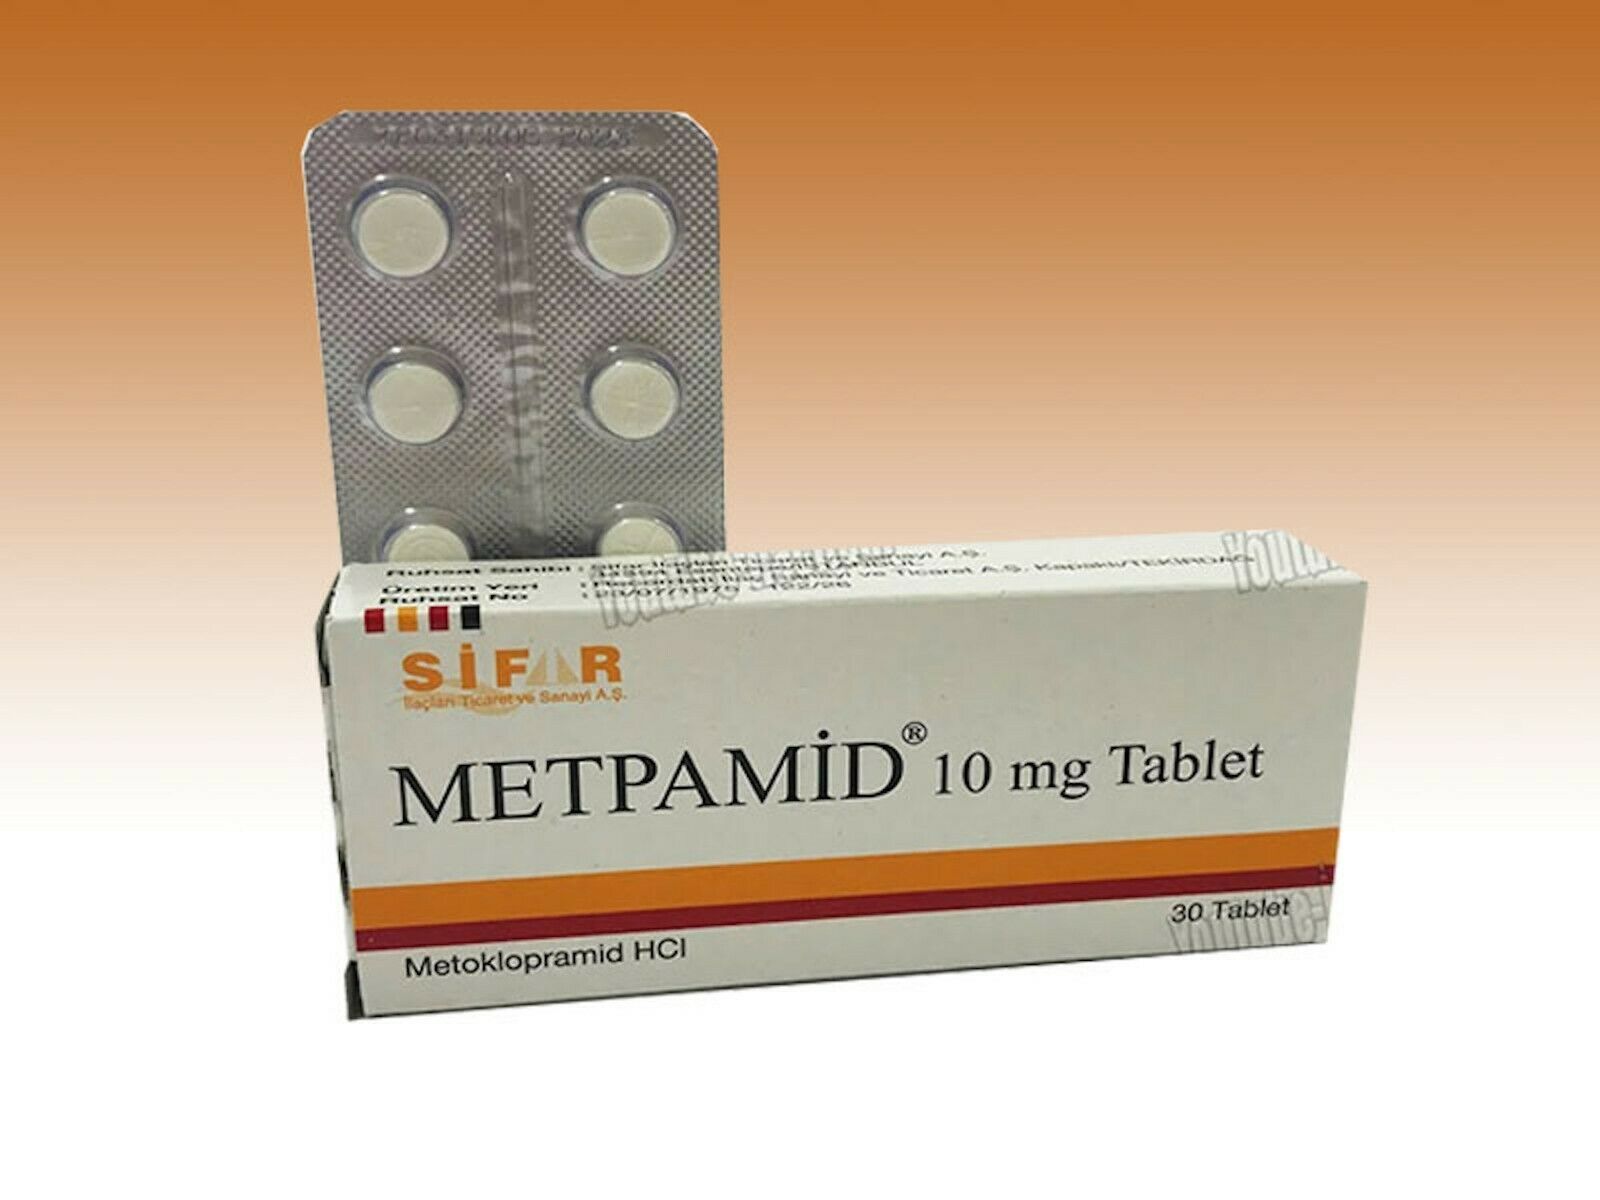 لماذا يستخدم دواء metpamid 10 mg